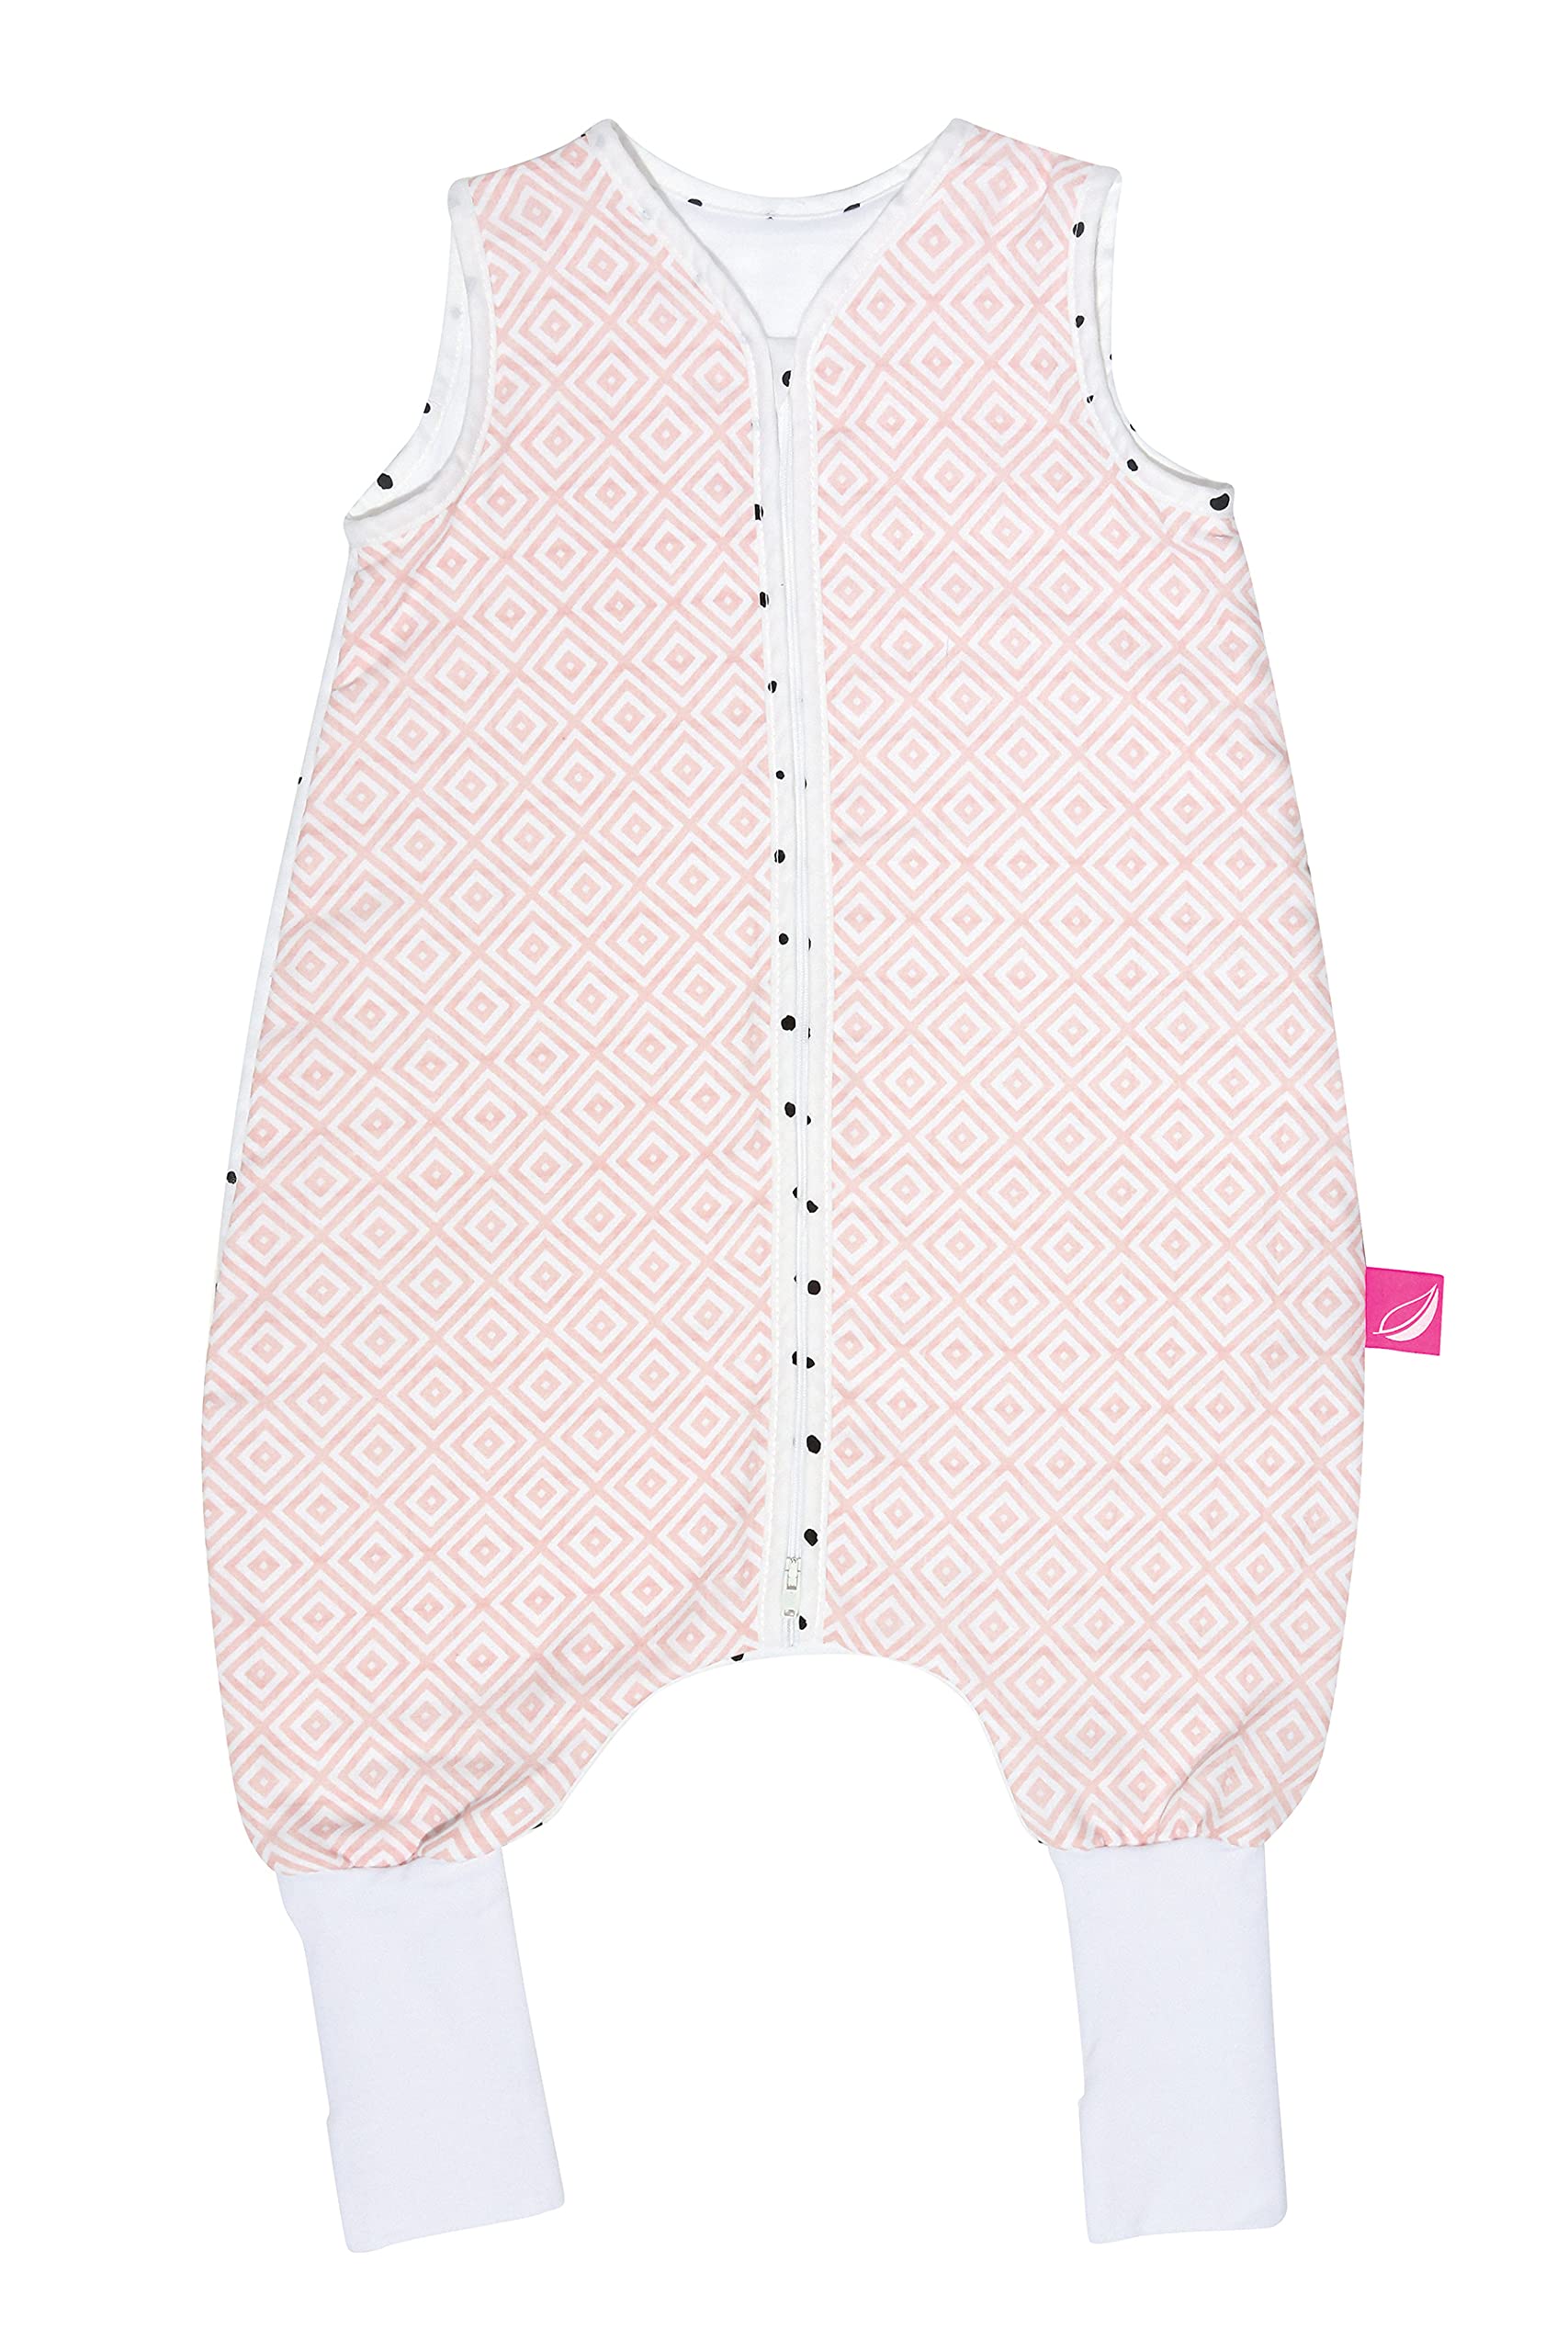 Babyschlafsack mit Beinen Frühling/Sommer aus Baumwolle von Motherhood - kuscheliger Babyschlafsack Öko Tex Standard, Klasse 1, Größe: 1-1,5 Jahre, Quadrate apricot